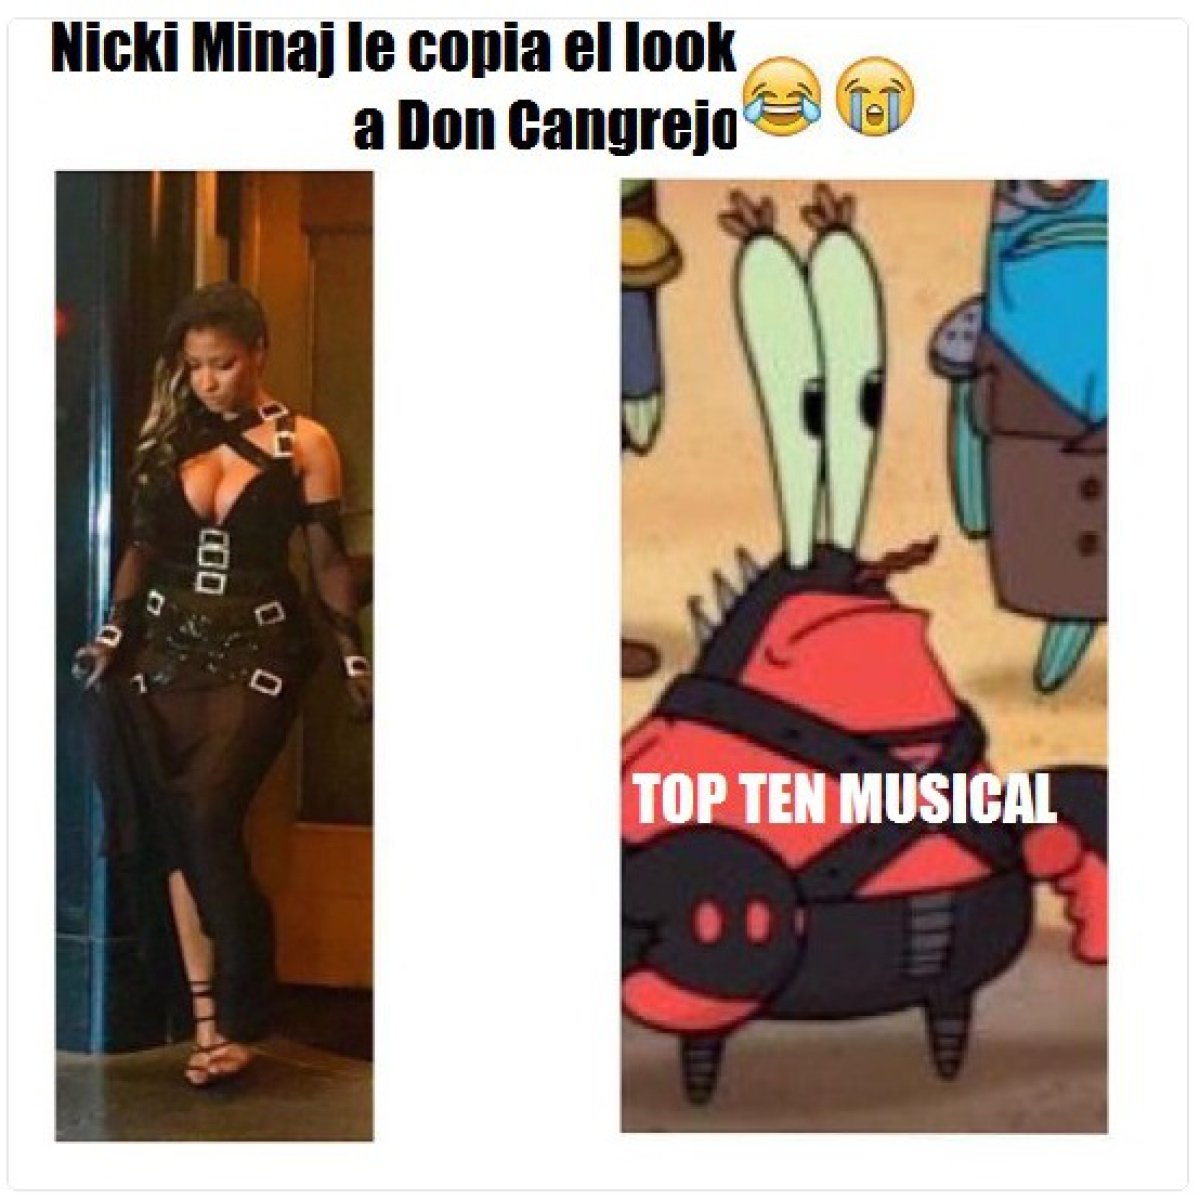 Nicki Minaj o Don Cangrejo?